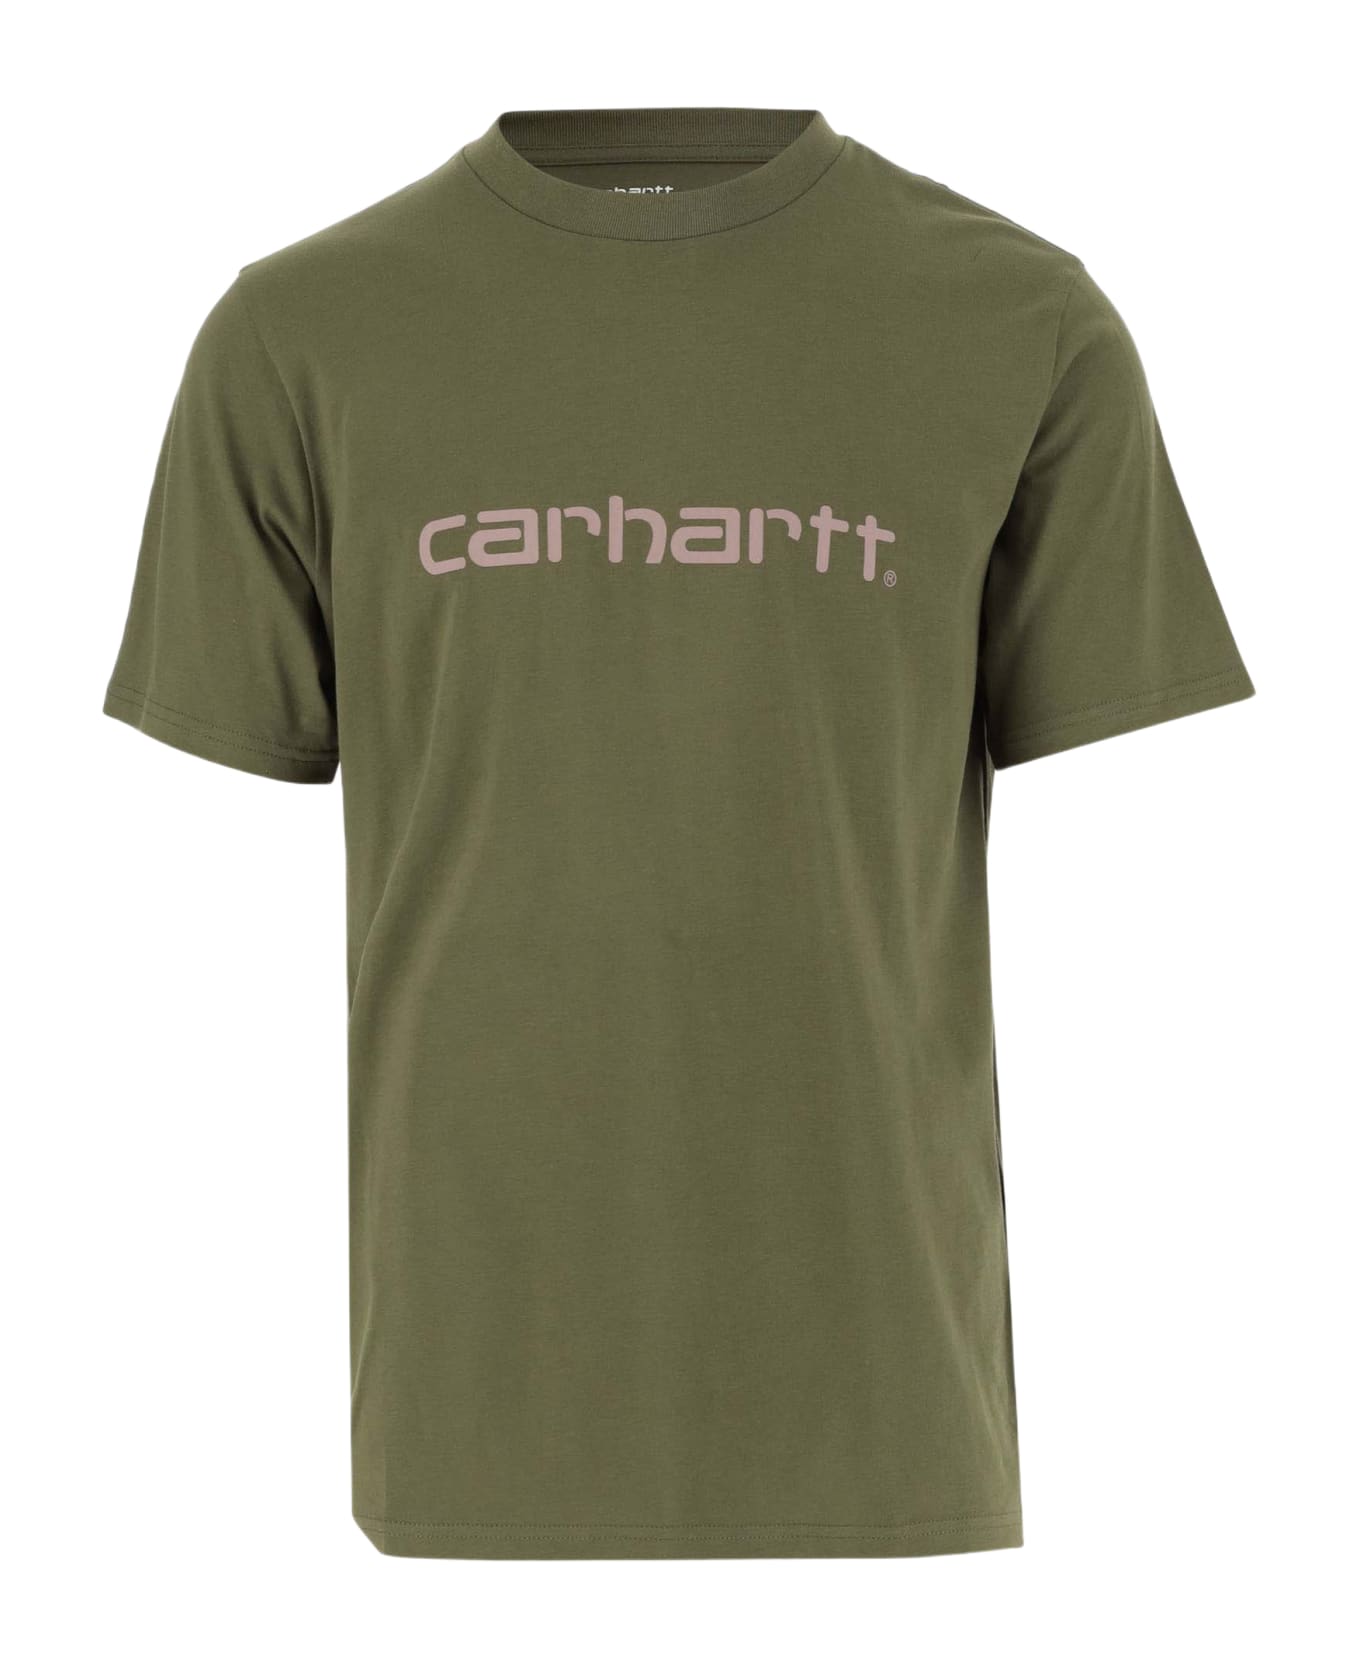 Carhartt Cotton T-shirt With Logo - Verde